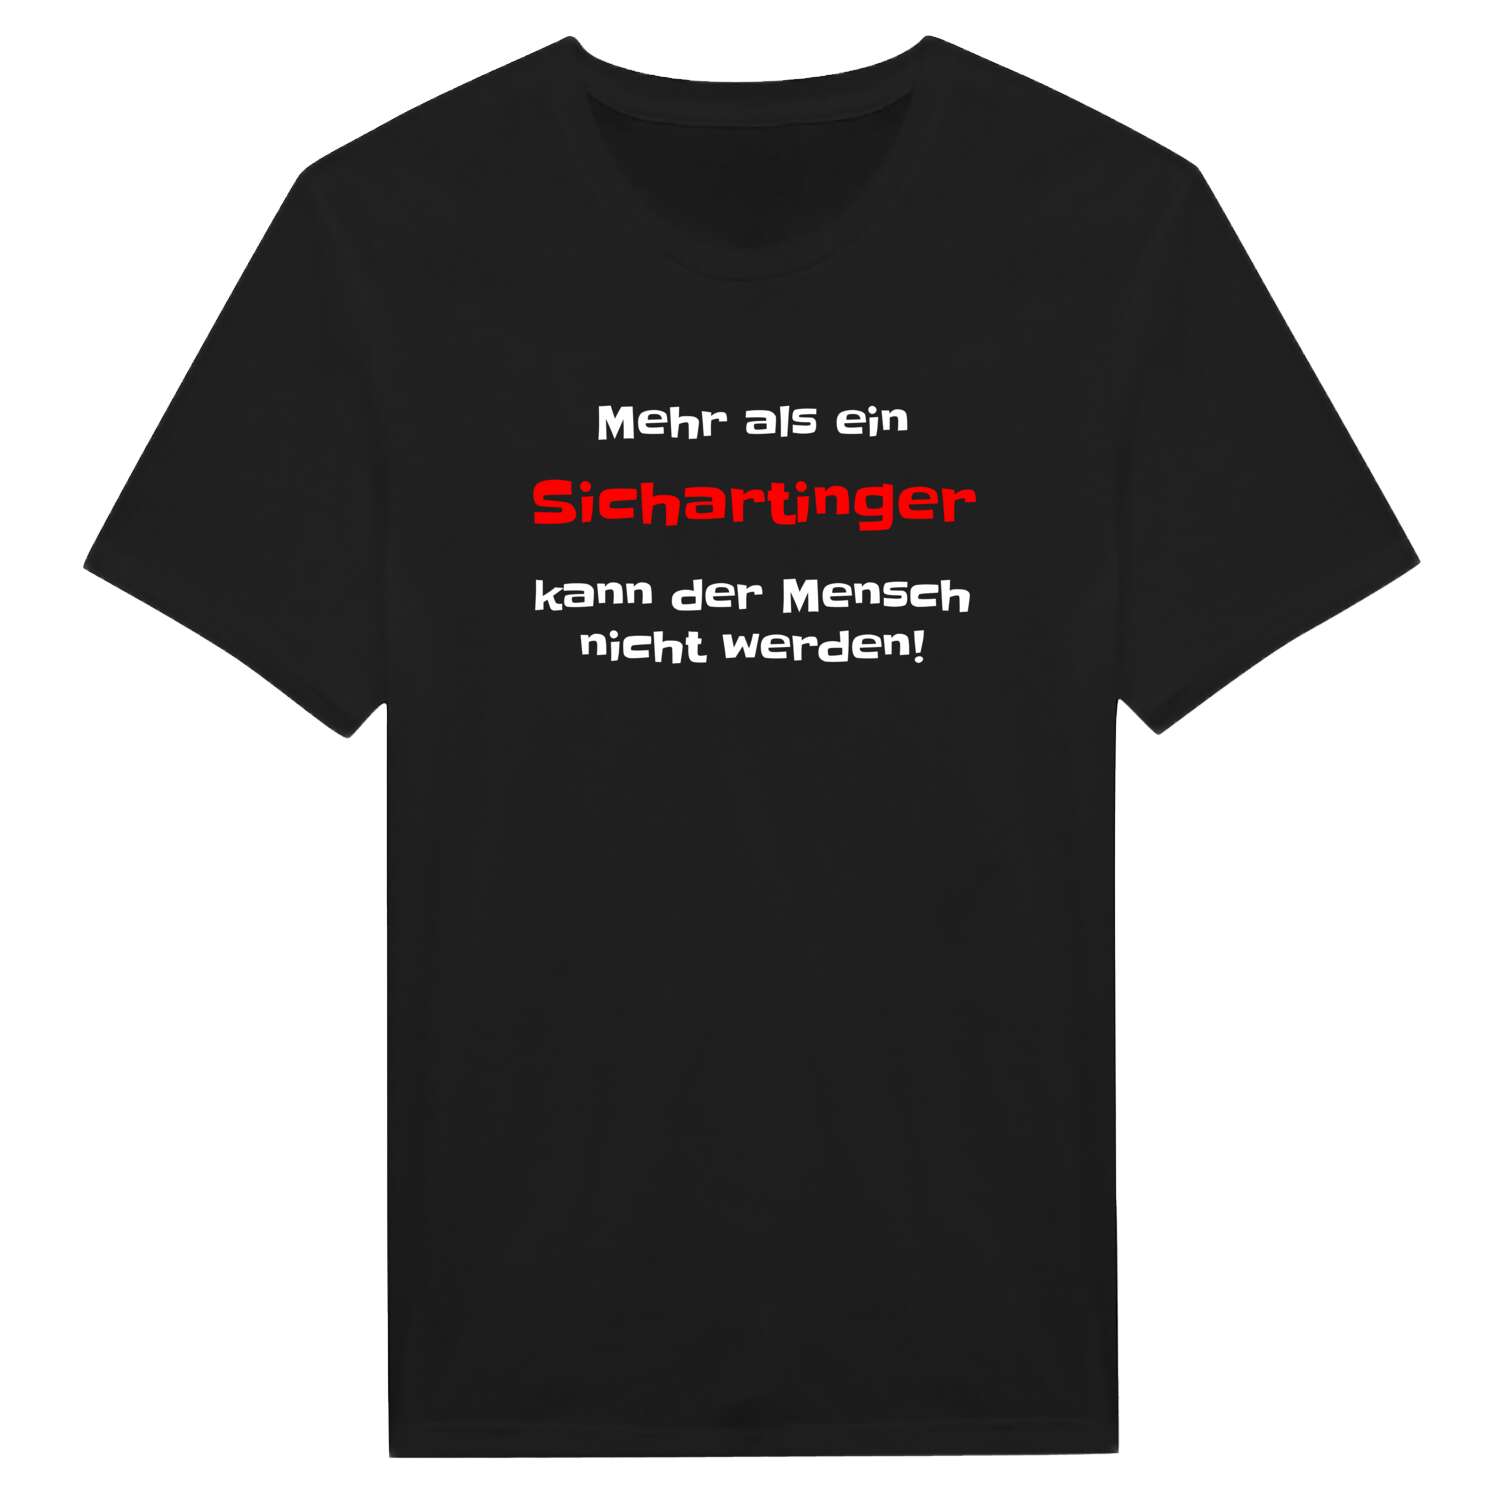 Sicharting T-Shirt »Mehr als ein«